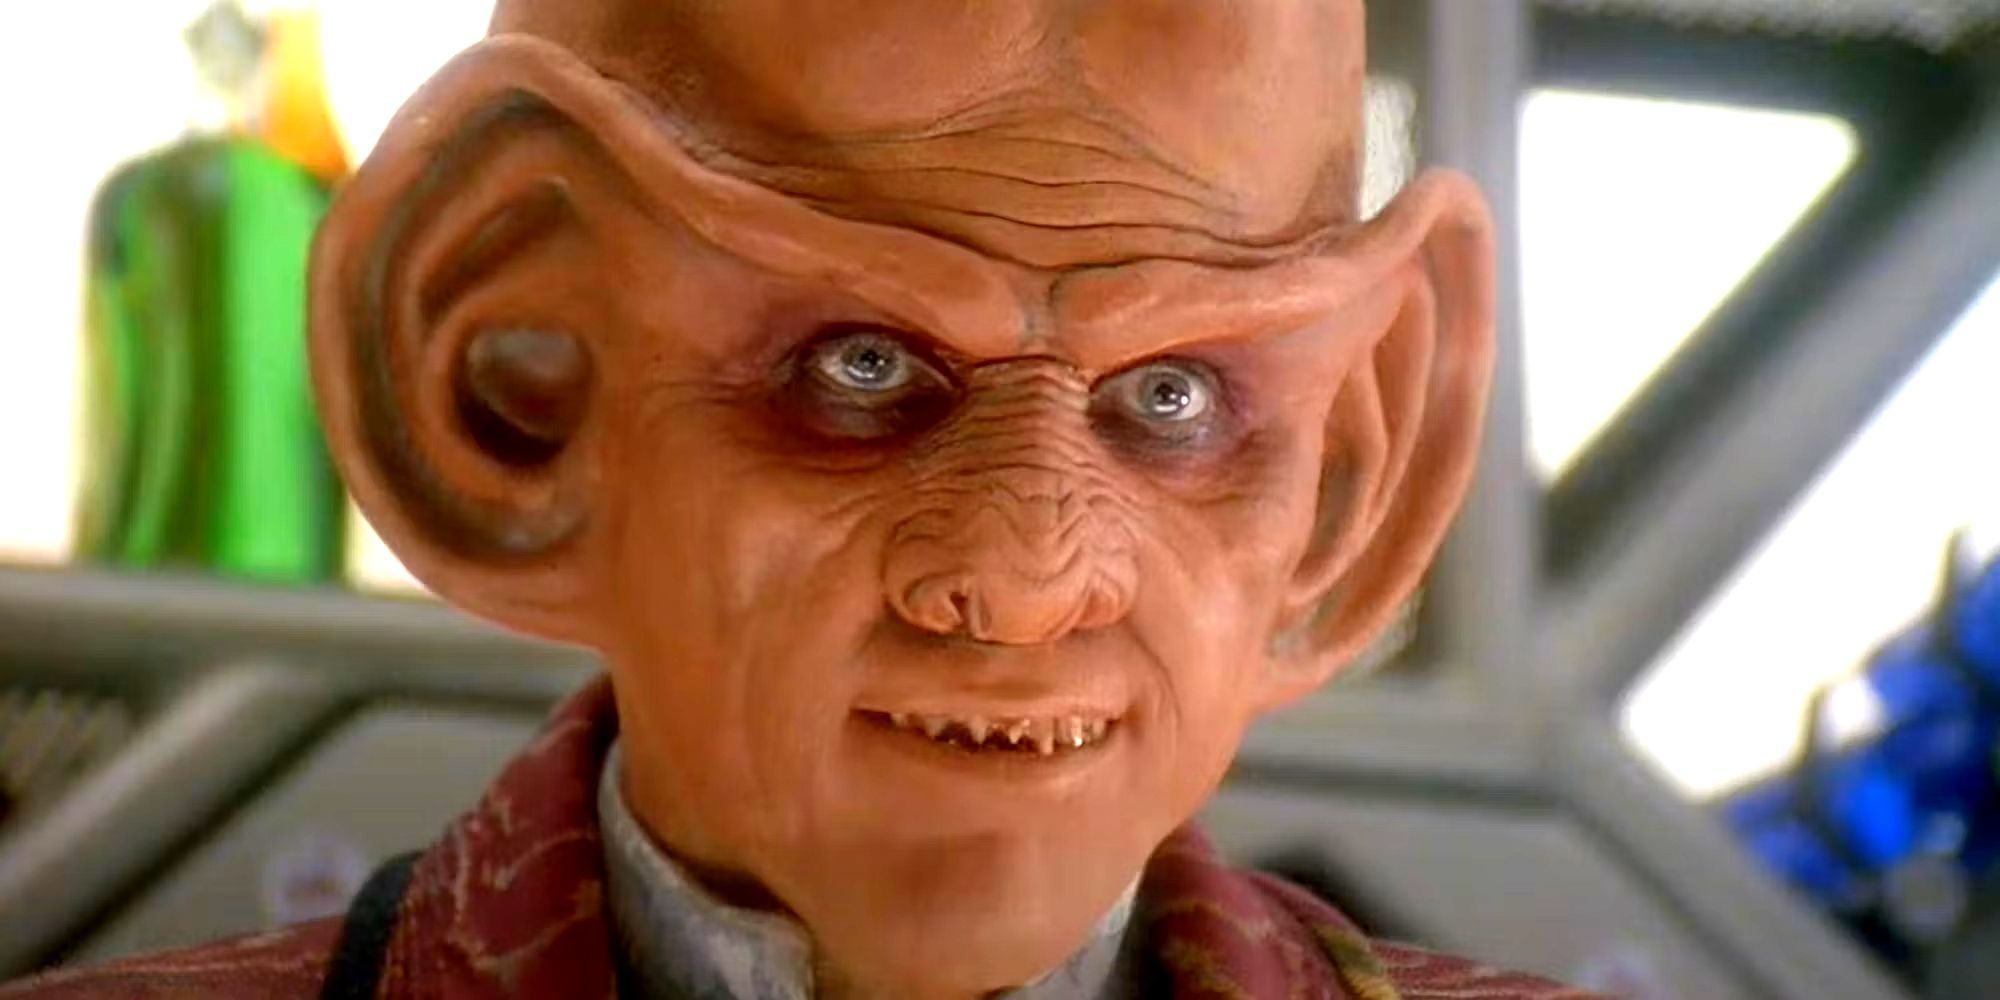 "Yo diría que sí": Armin Shimerman de DS9 regresaría a Star Trek como Quark